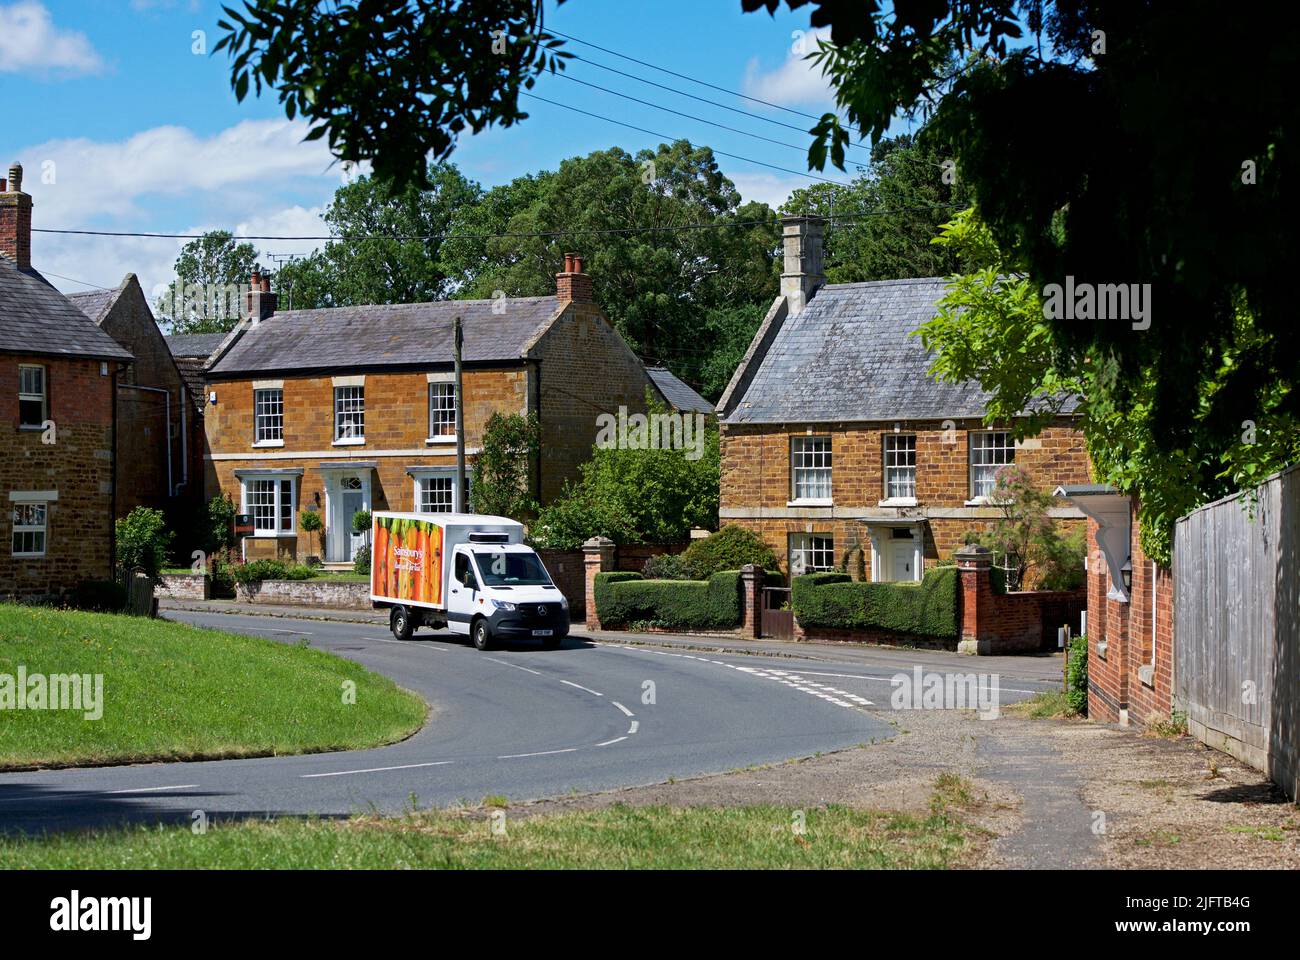 Sainsbury's Delivery van dans le village de Weston par Welland, Northamptonshire, Angleterre Royaume-Uni Banque D'Images